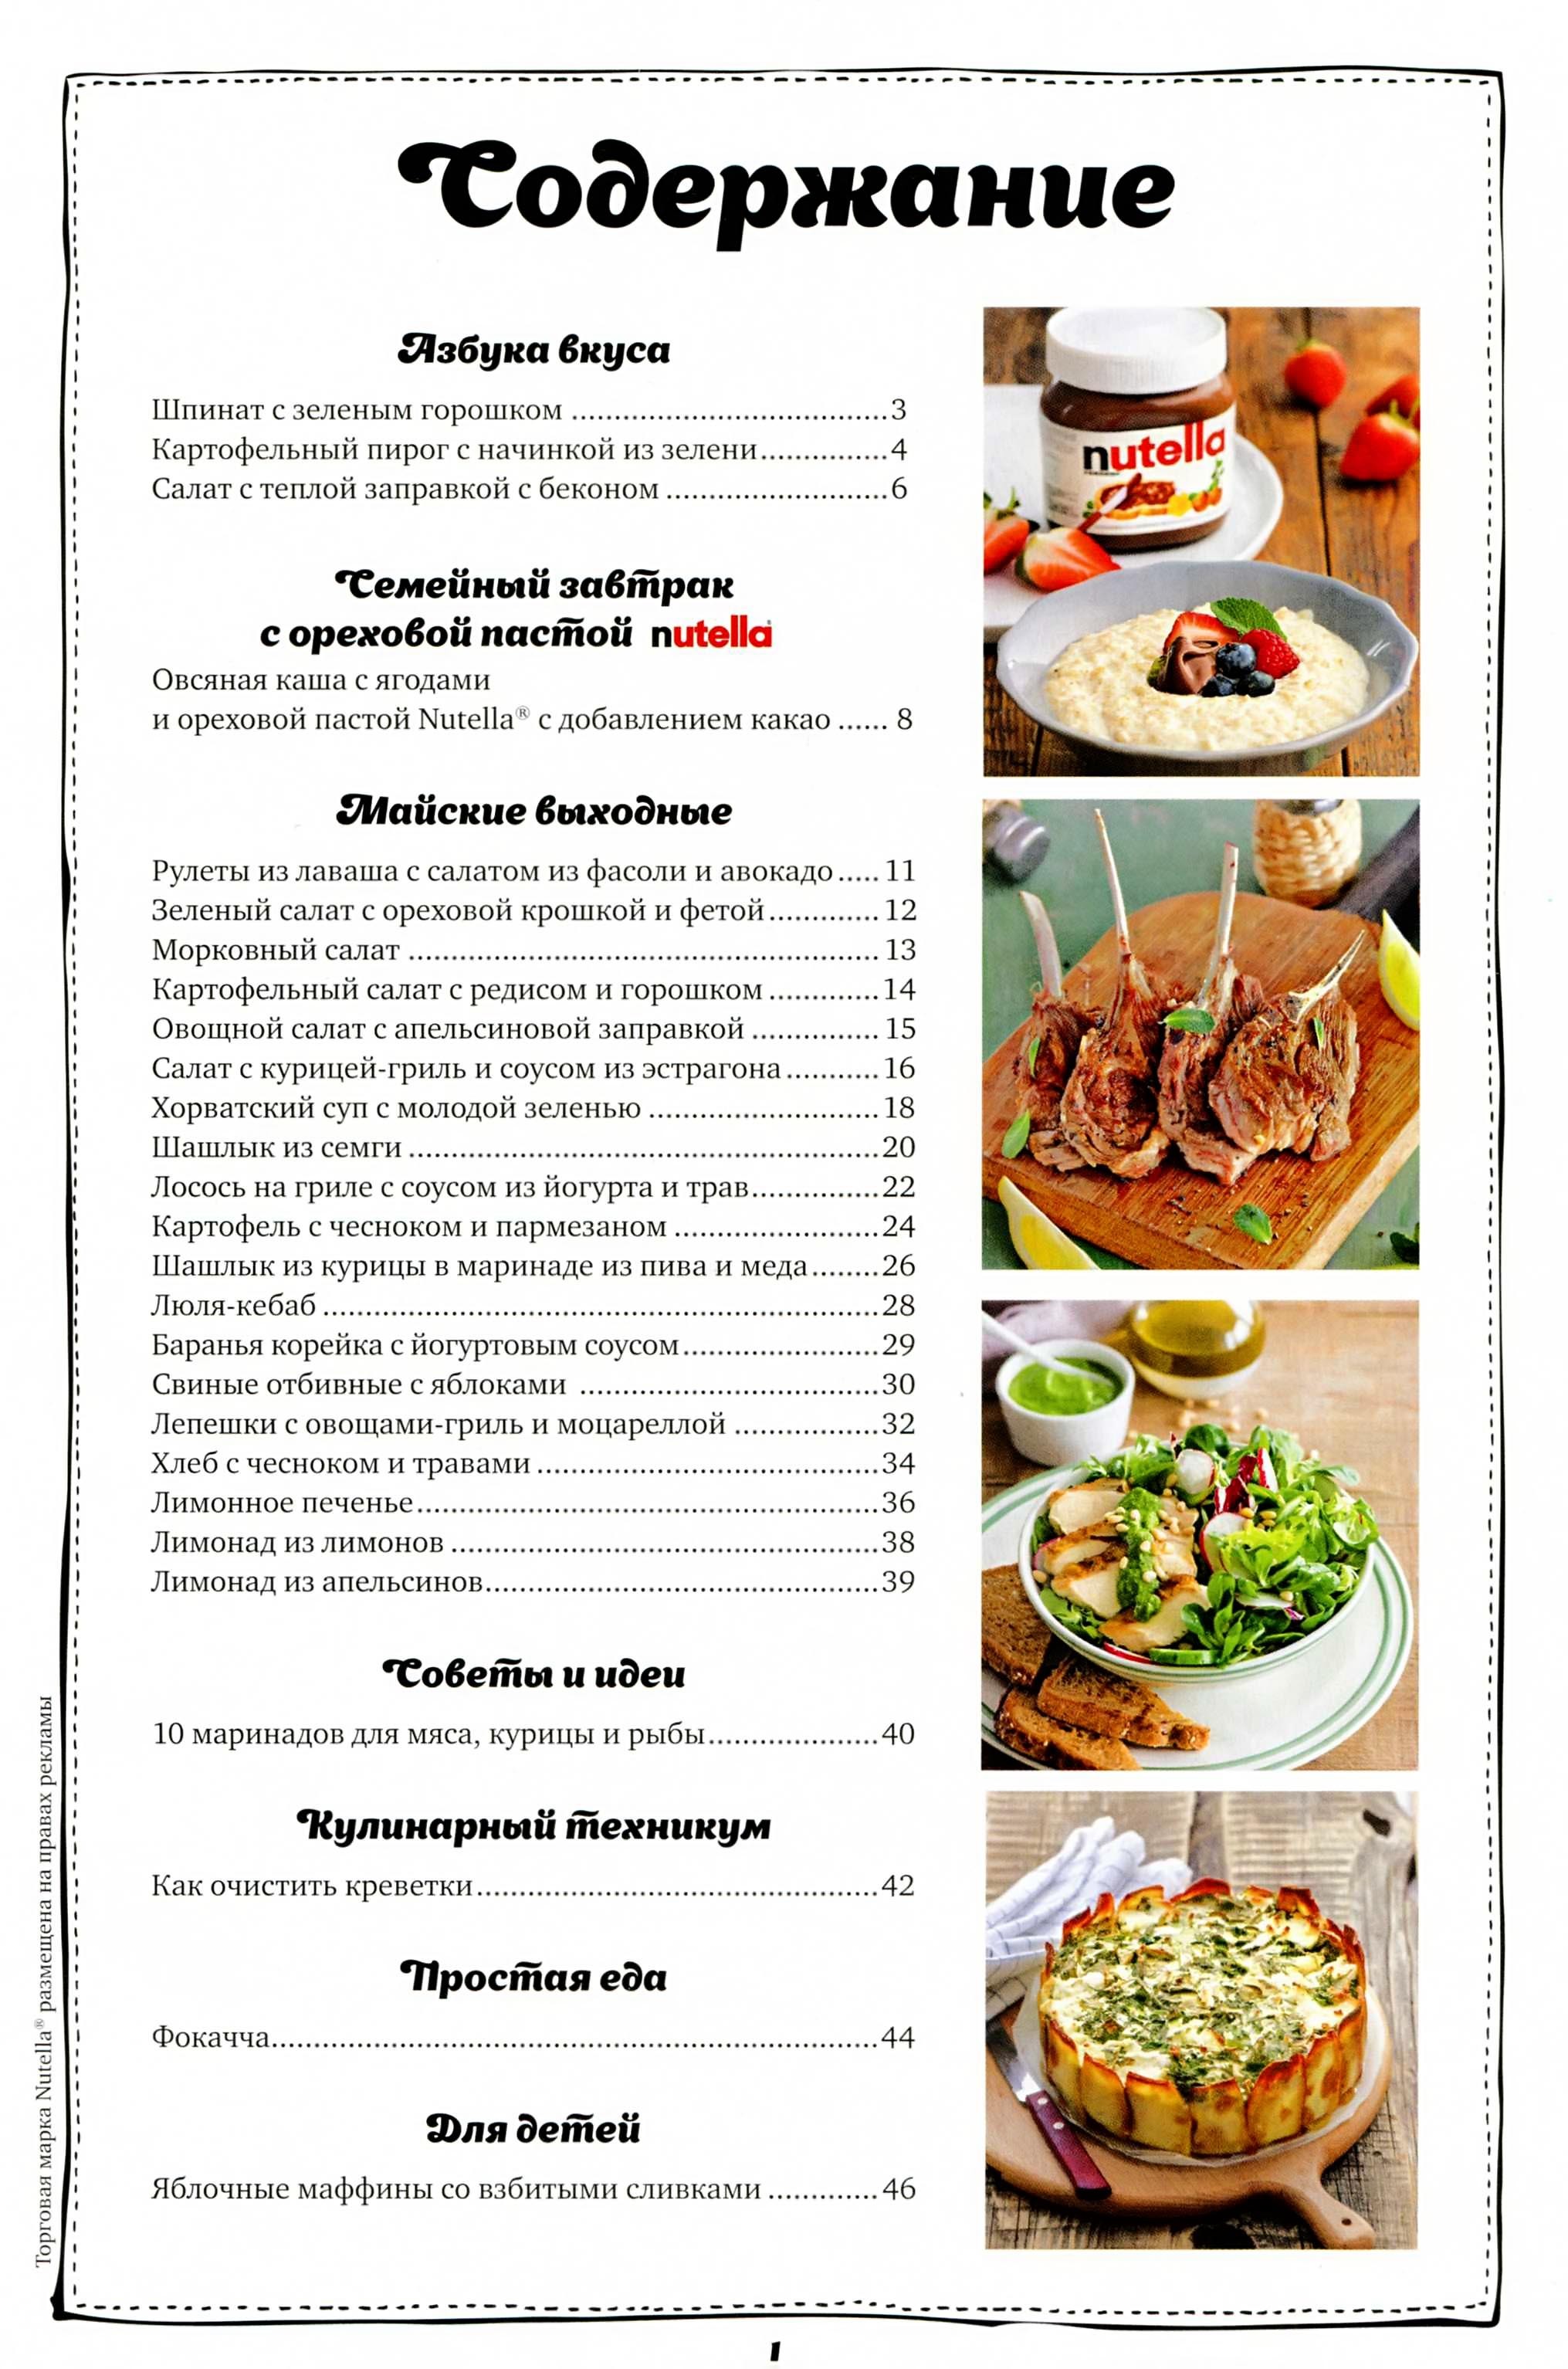 Украинская домашняя кухня книга гастронома скачать